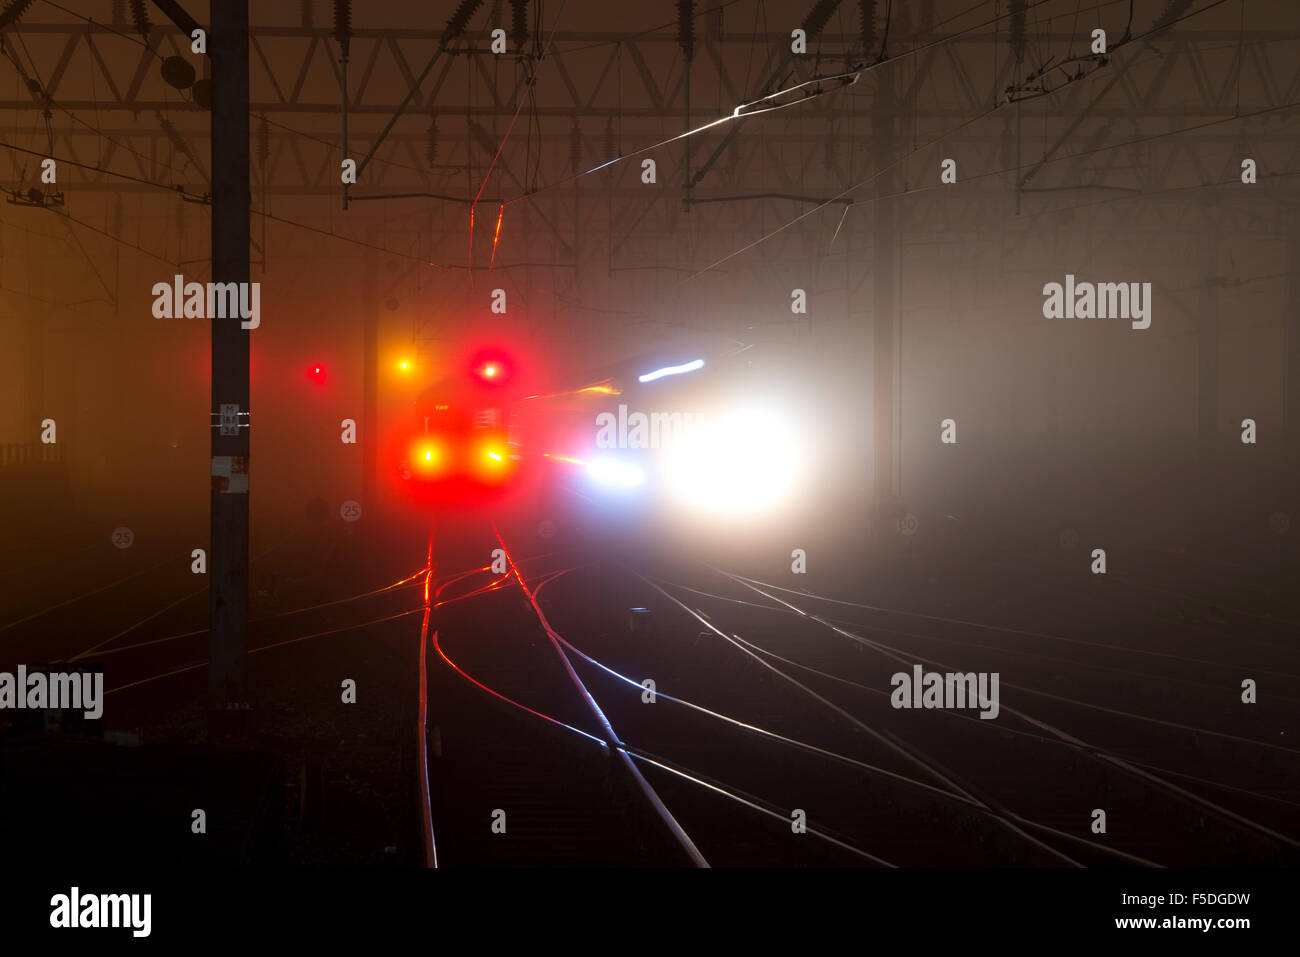 Manchester, UK. 2. November 2015. Züge ankommen und abfahren am Bahnhof Manchester Piccadilly im dichten Nebel in einer dunklen Nacht Credit: Russell Hart/Alamy Live News. Stockfoto